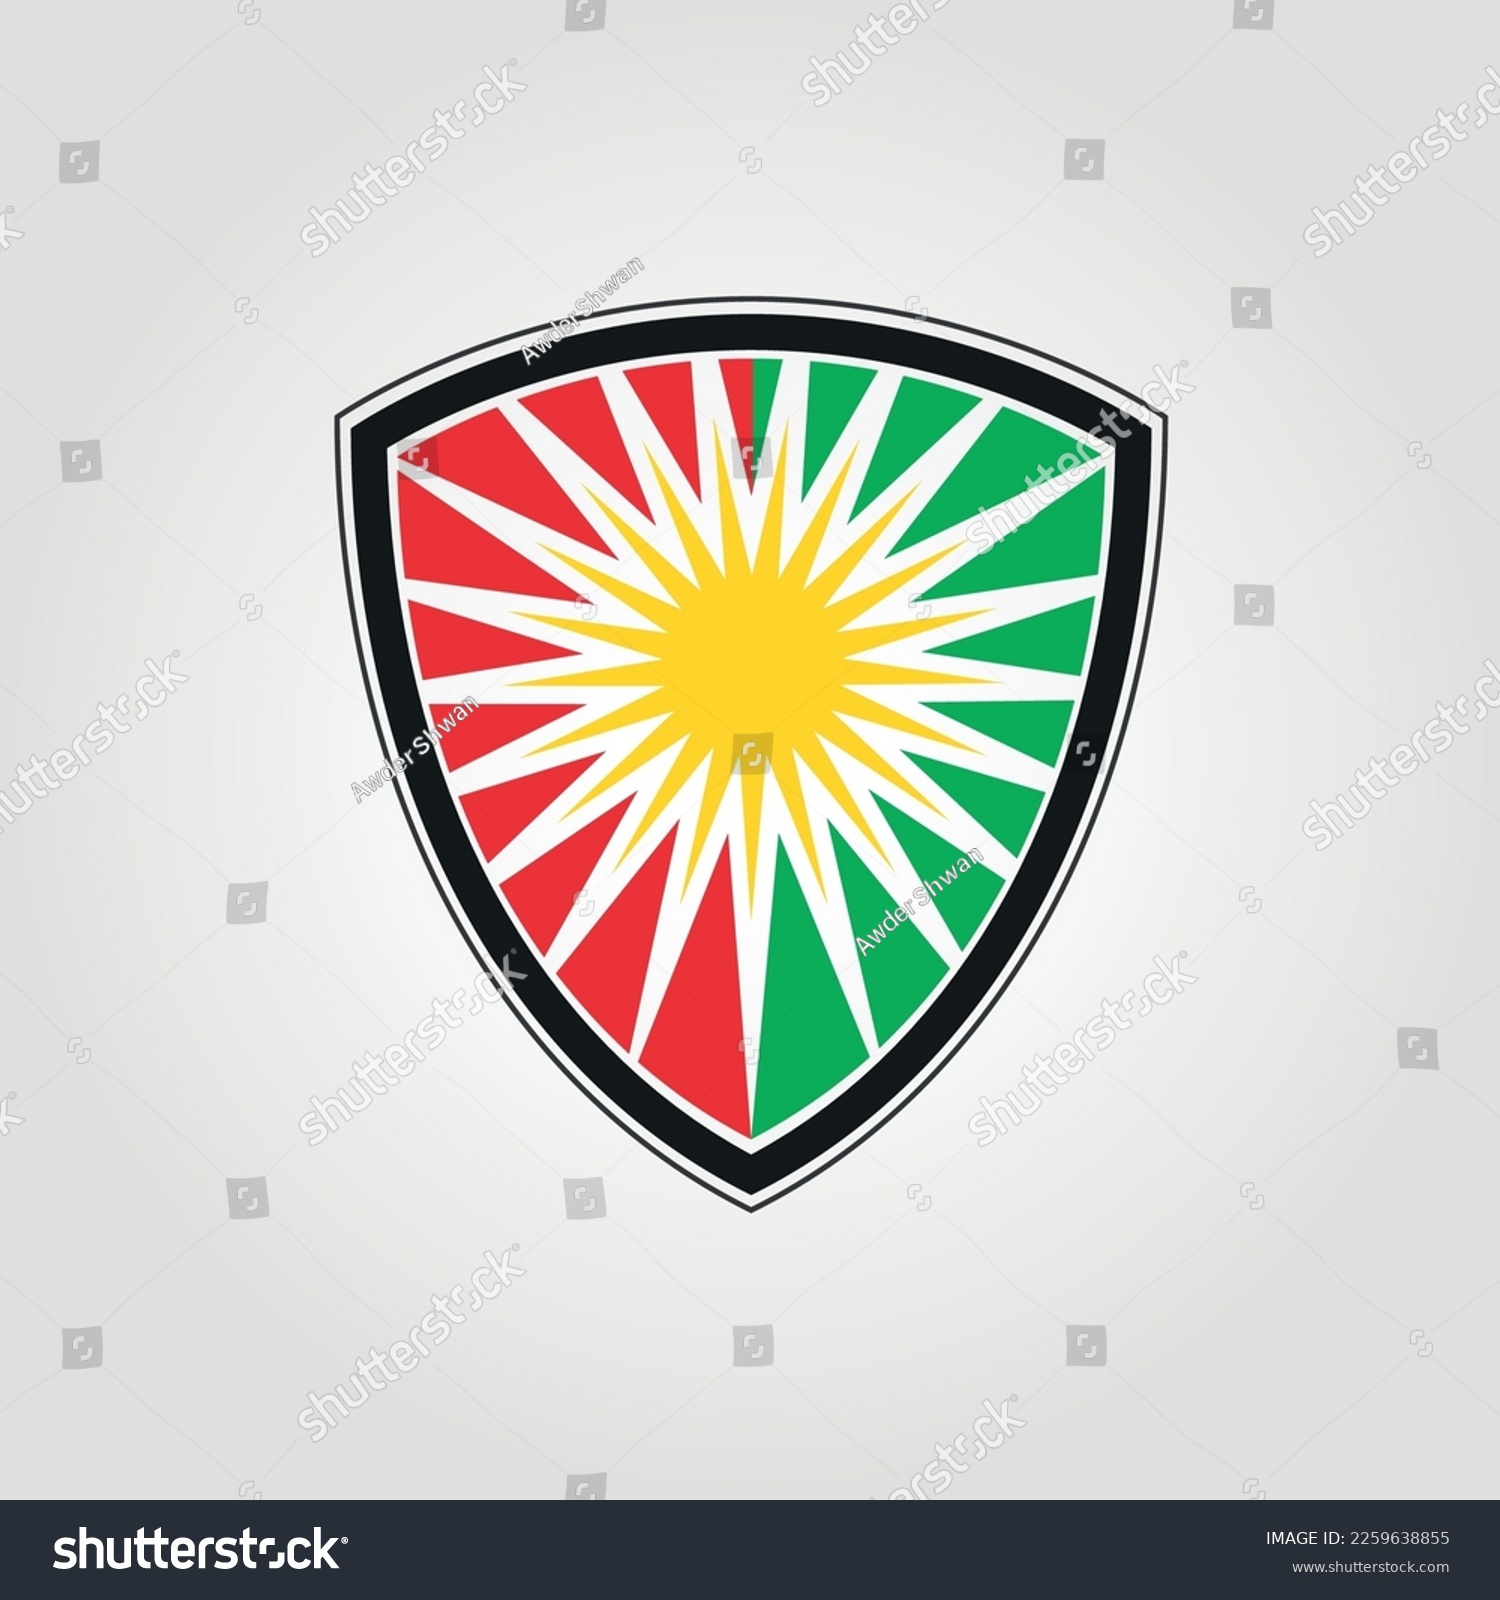 Kurdistan Flag Emblem, Kurdistan Flag logo - Royalty Free Stock Vector ...